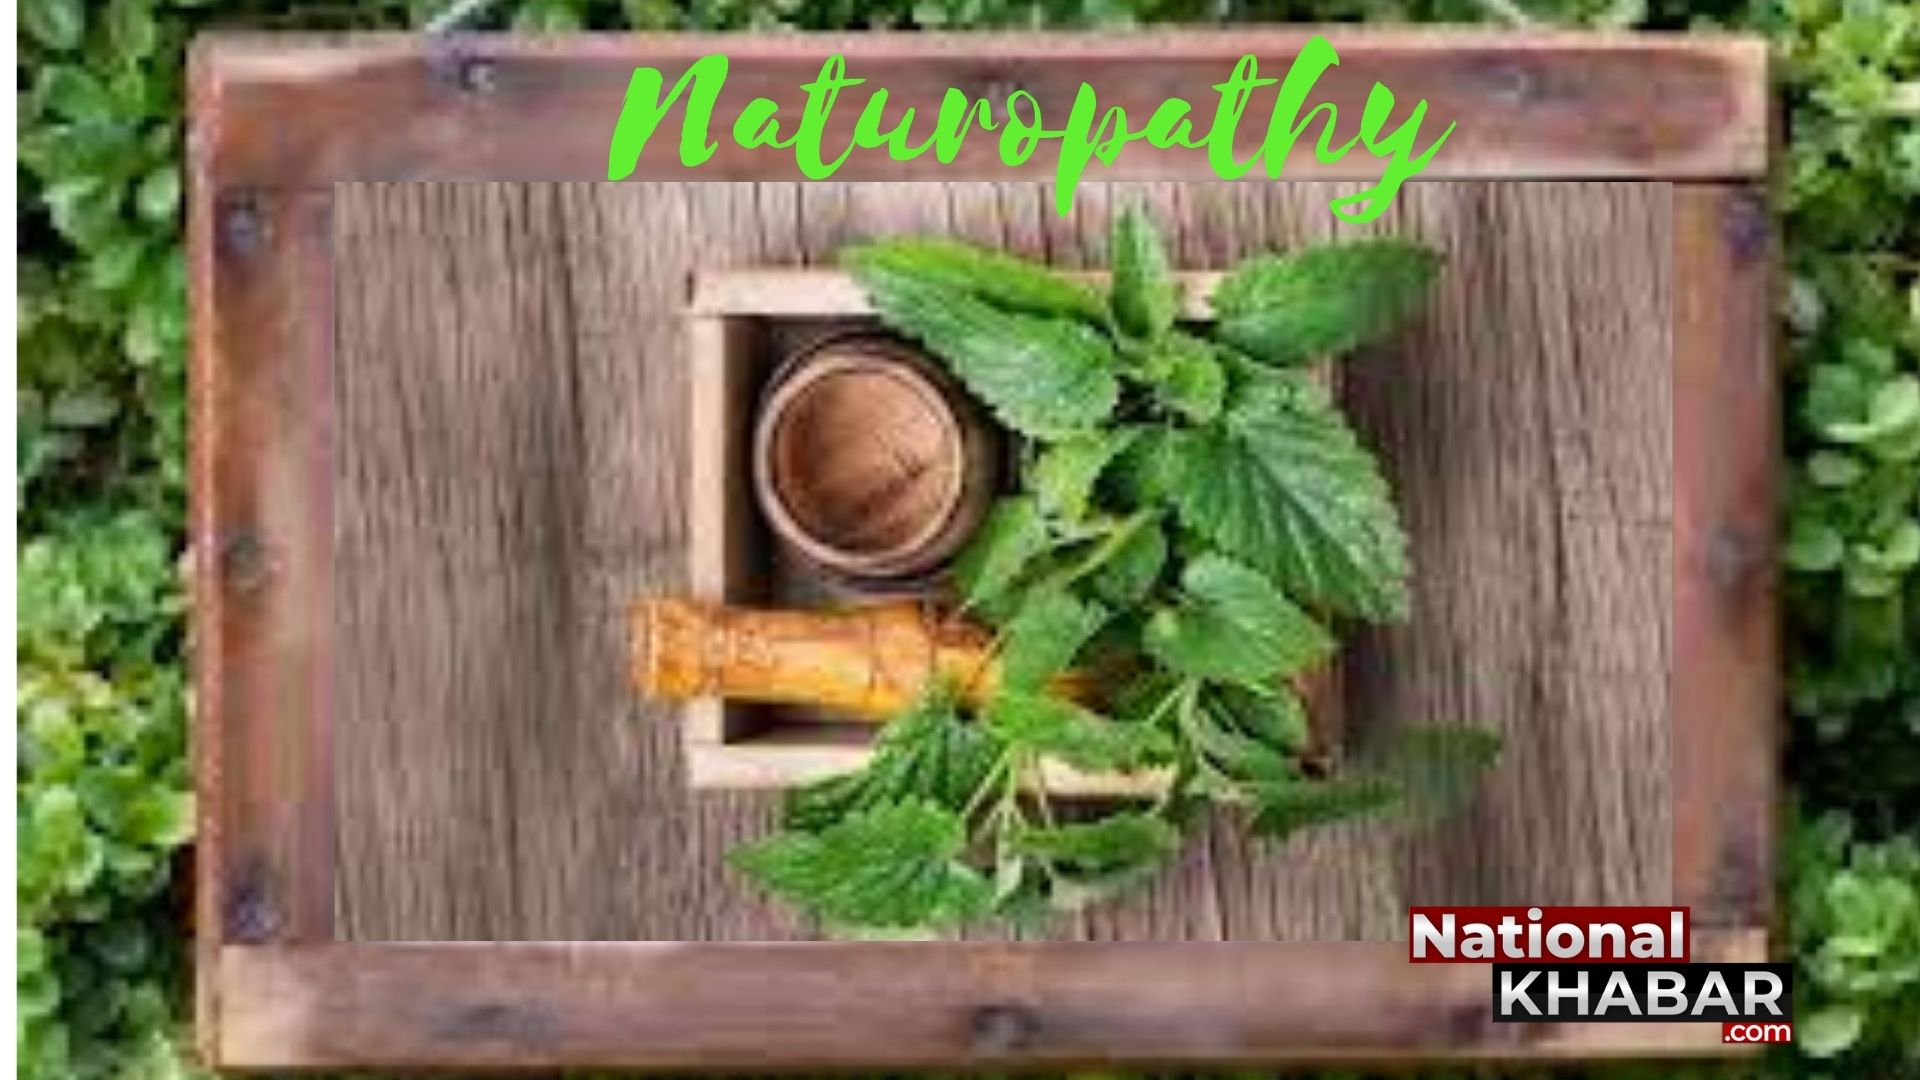 Naturopathy Day यानि प्राकृतिक चिकित्सा दिवस क्या है प्राकृतिक चिकित्सा पद्धति, किसने बनाया इसे भारत में लोकप्रिय?